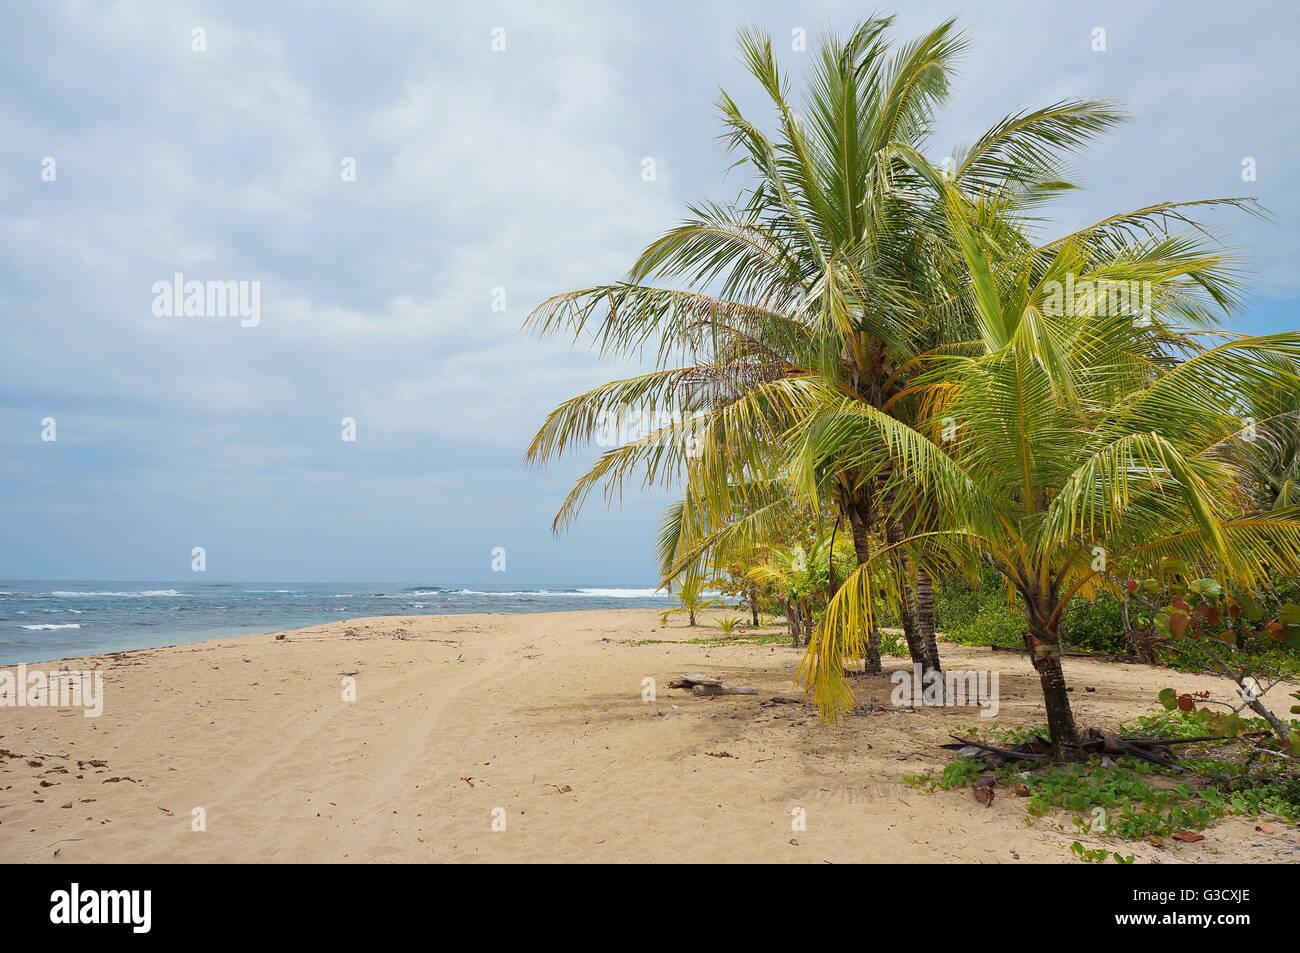 Playa de arena con árboles de coco en la costa caribe de Costa Rica, Puerto Viejo de Talamanca, América Central Foto de stock